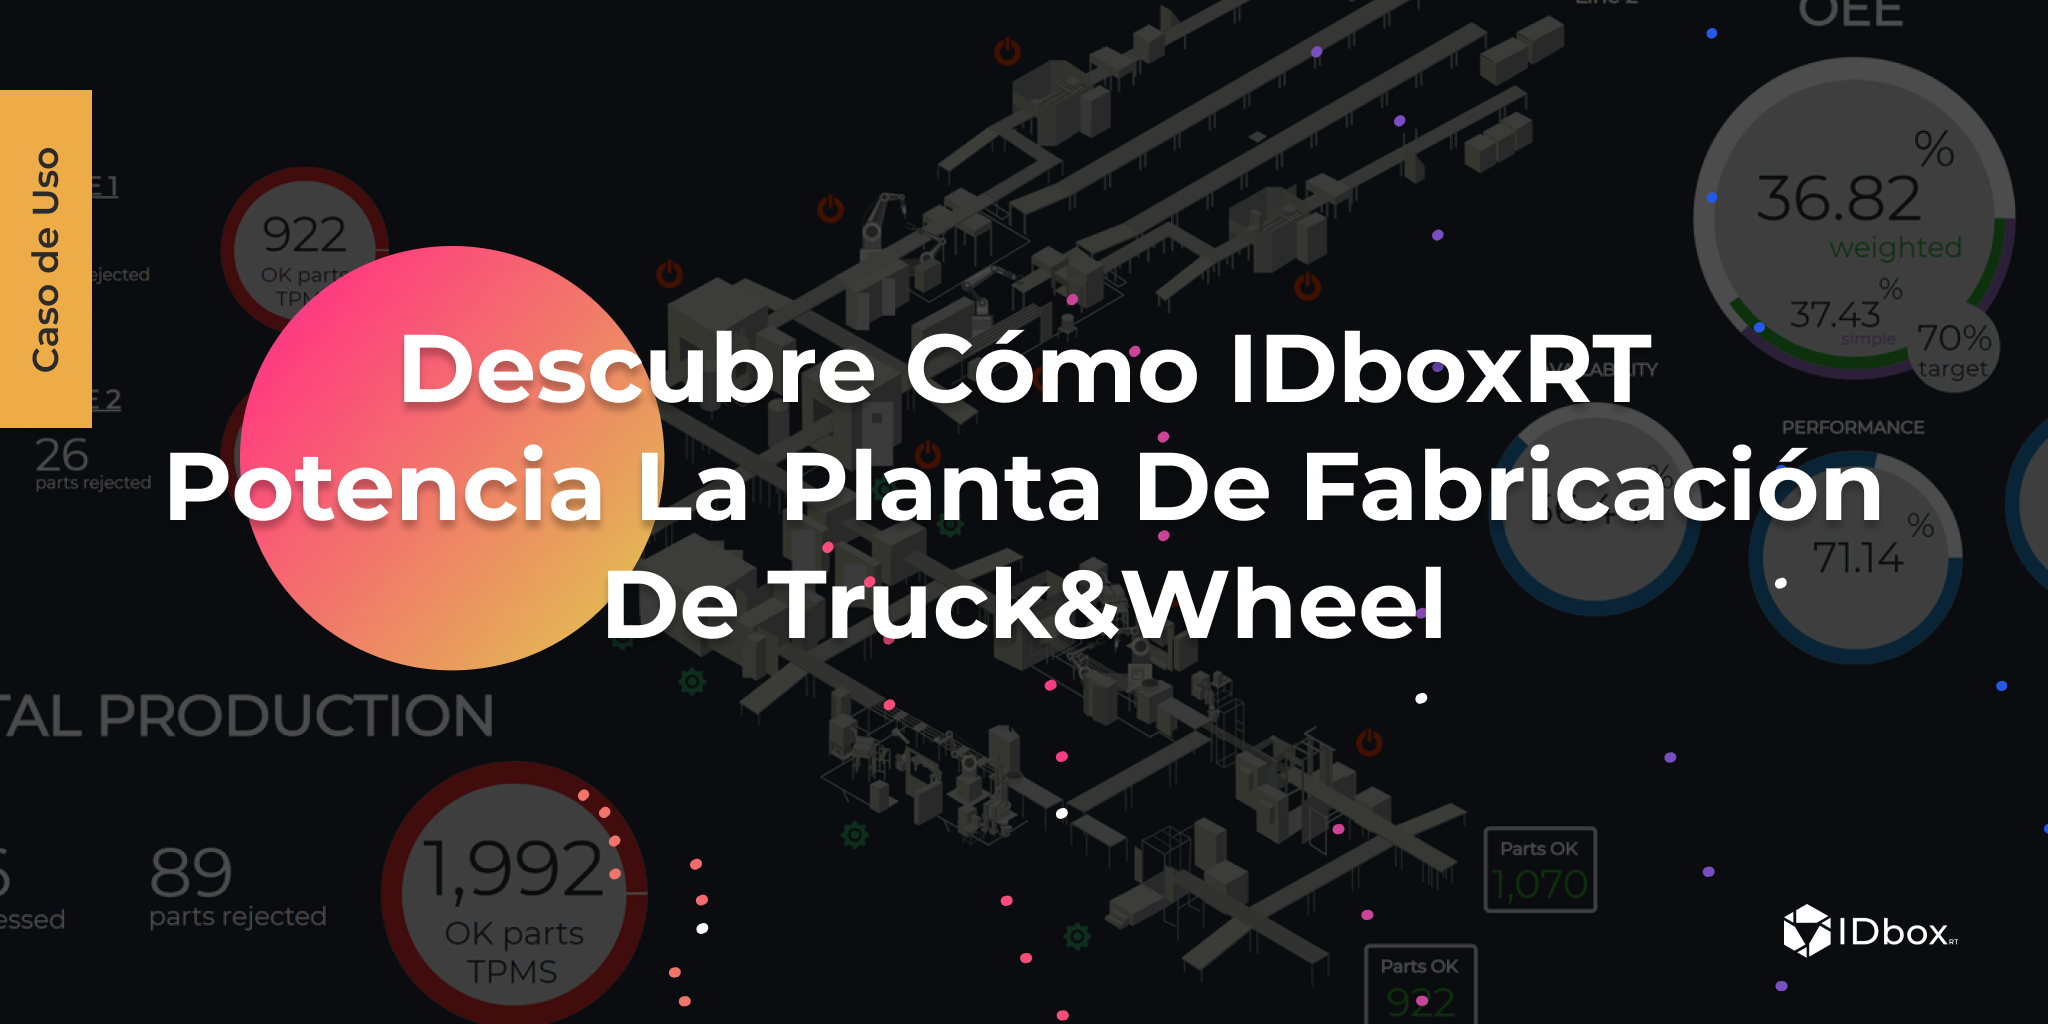 Caso de Uso: Descubra cómo IDboxRT potencia la planta de fabricación de Truck&Wheel